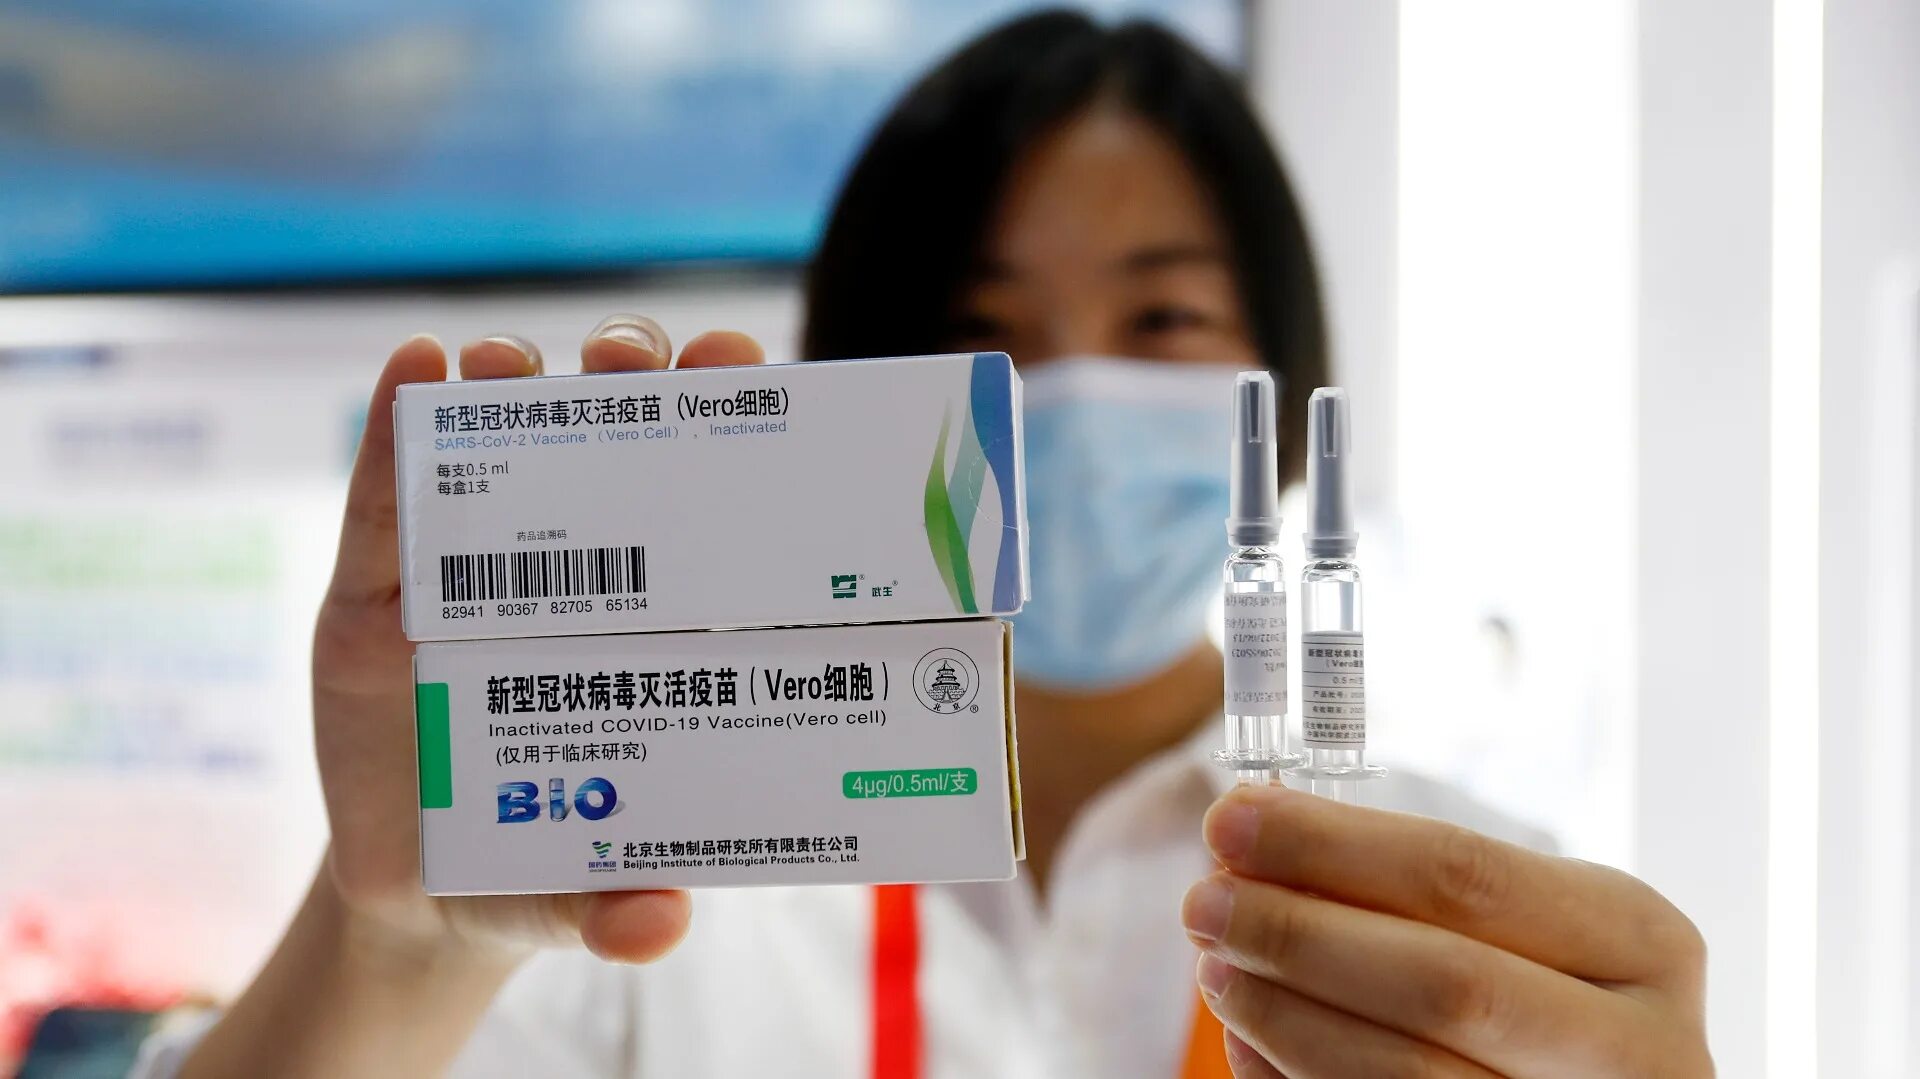 Covid-19 вакцина китайская. Вакцина Синофарм китайская. Vero Cell вакцина. Китайская вакцина от коронавируса.